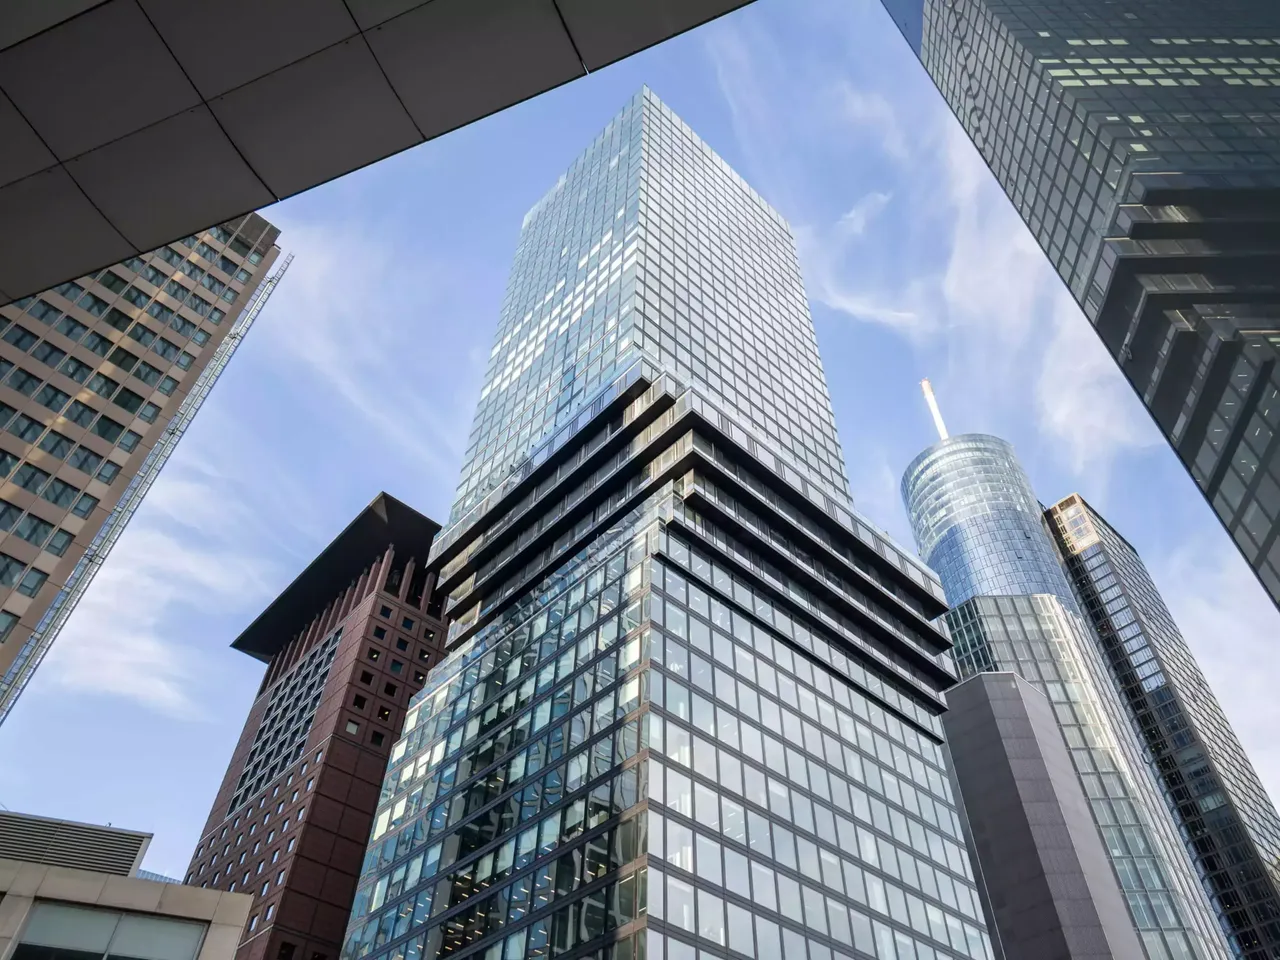 Außenansicht: Es wird die Fassade der hausInvest Immobilie Omniturm in Frankfurt am Main abgebildet